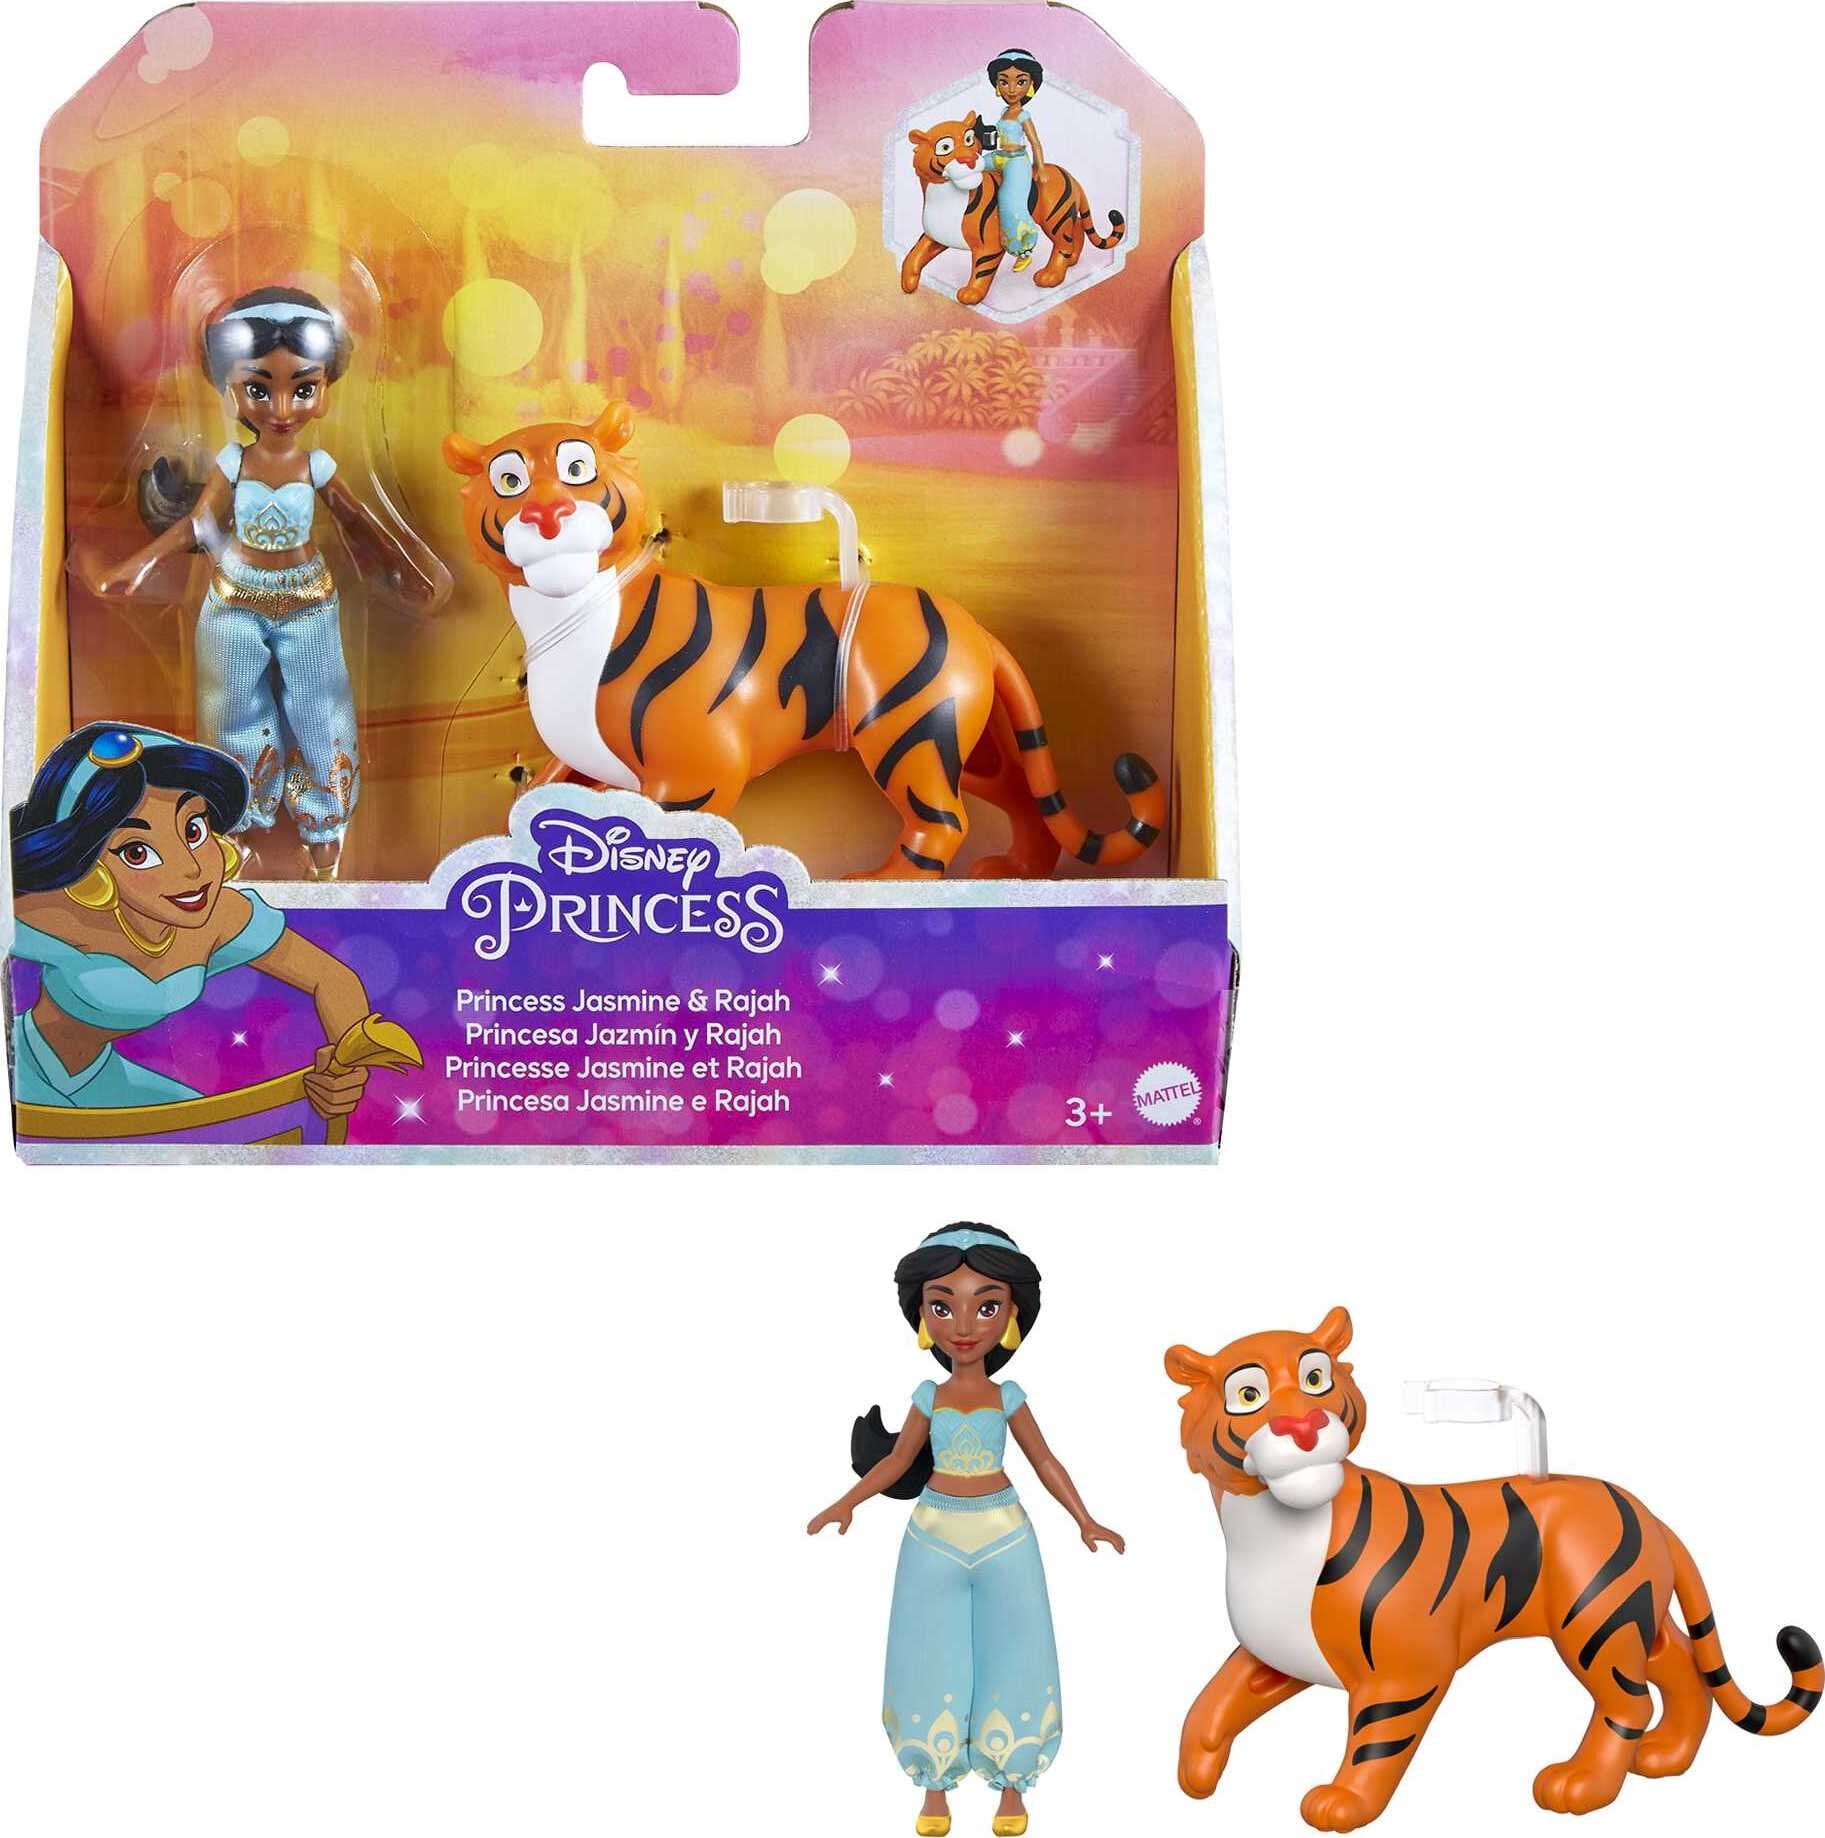 Aladdin & Jasmine. Disney princess , Aladdin , Disney princess